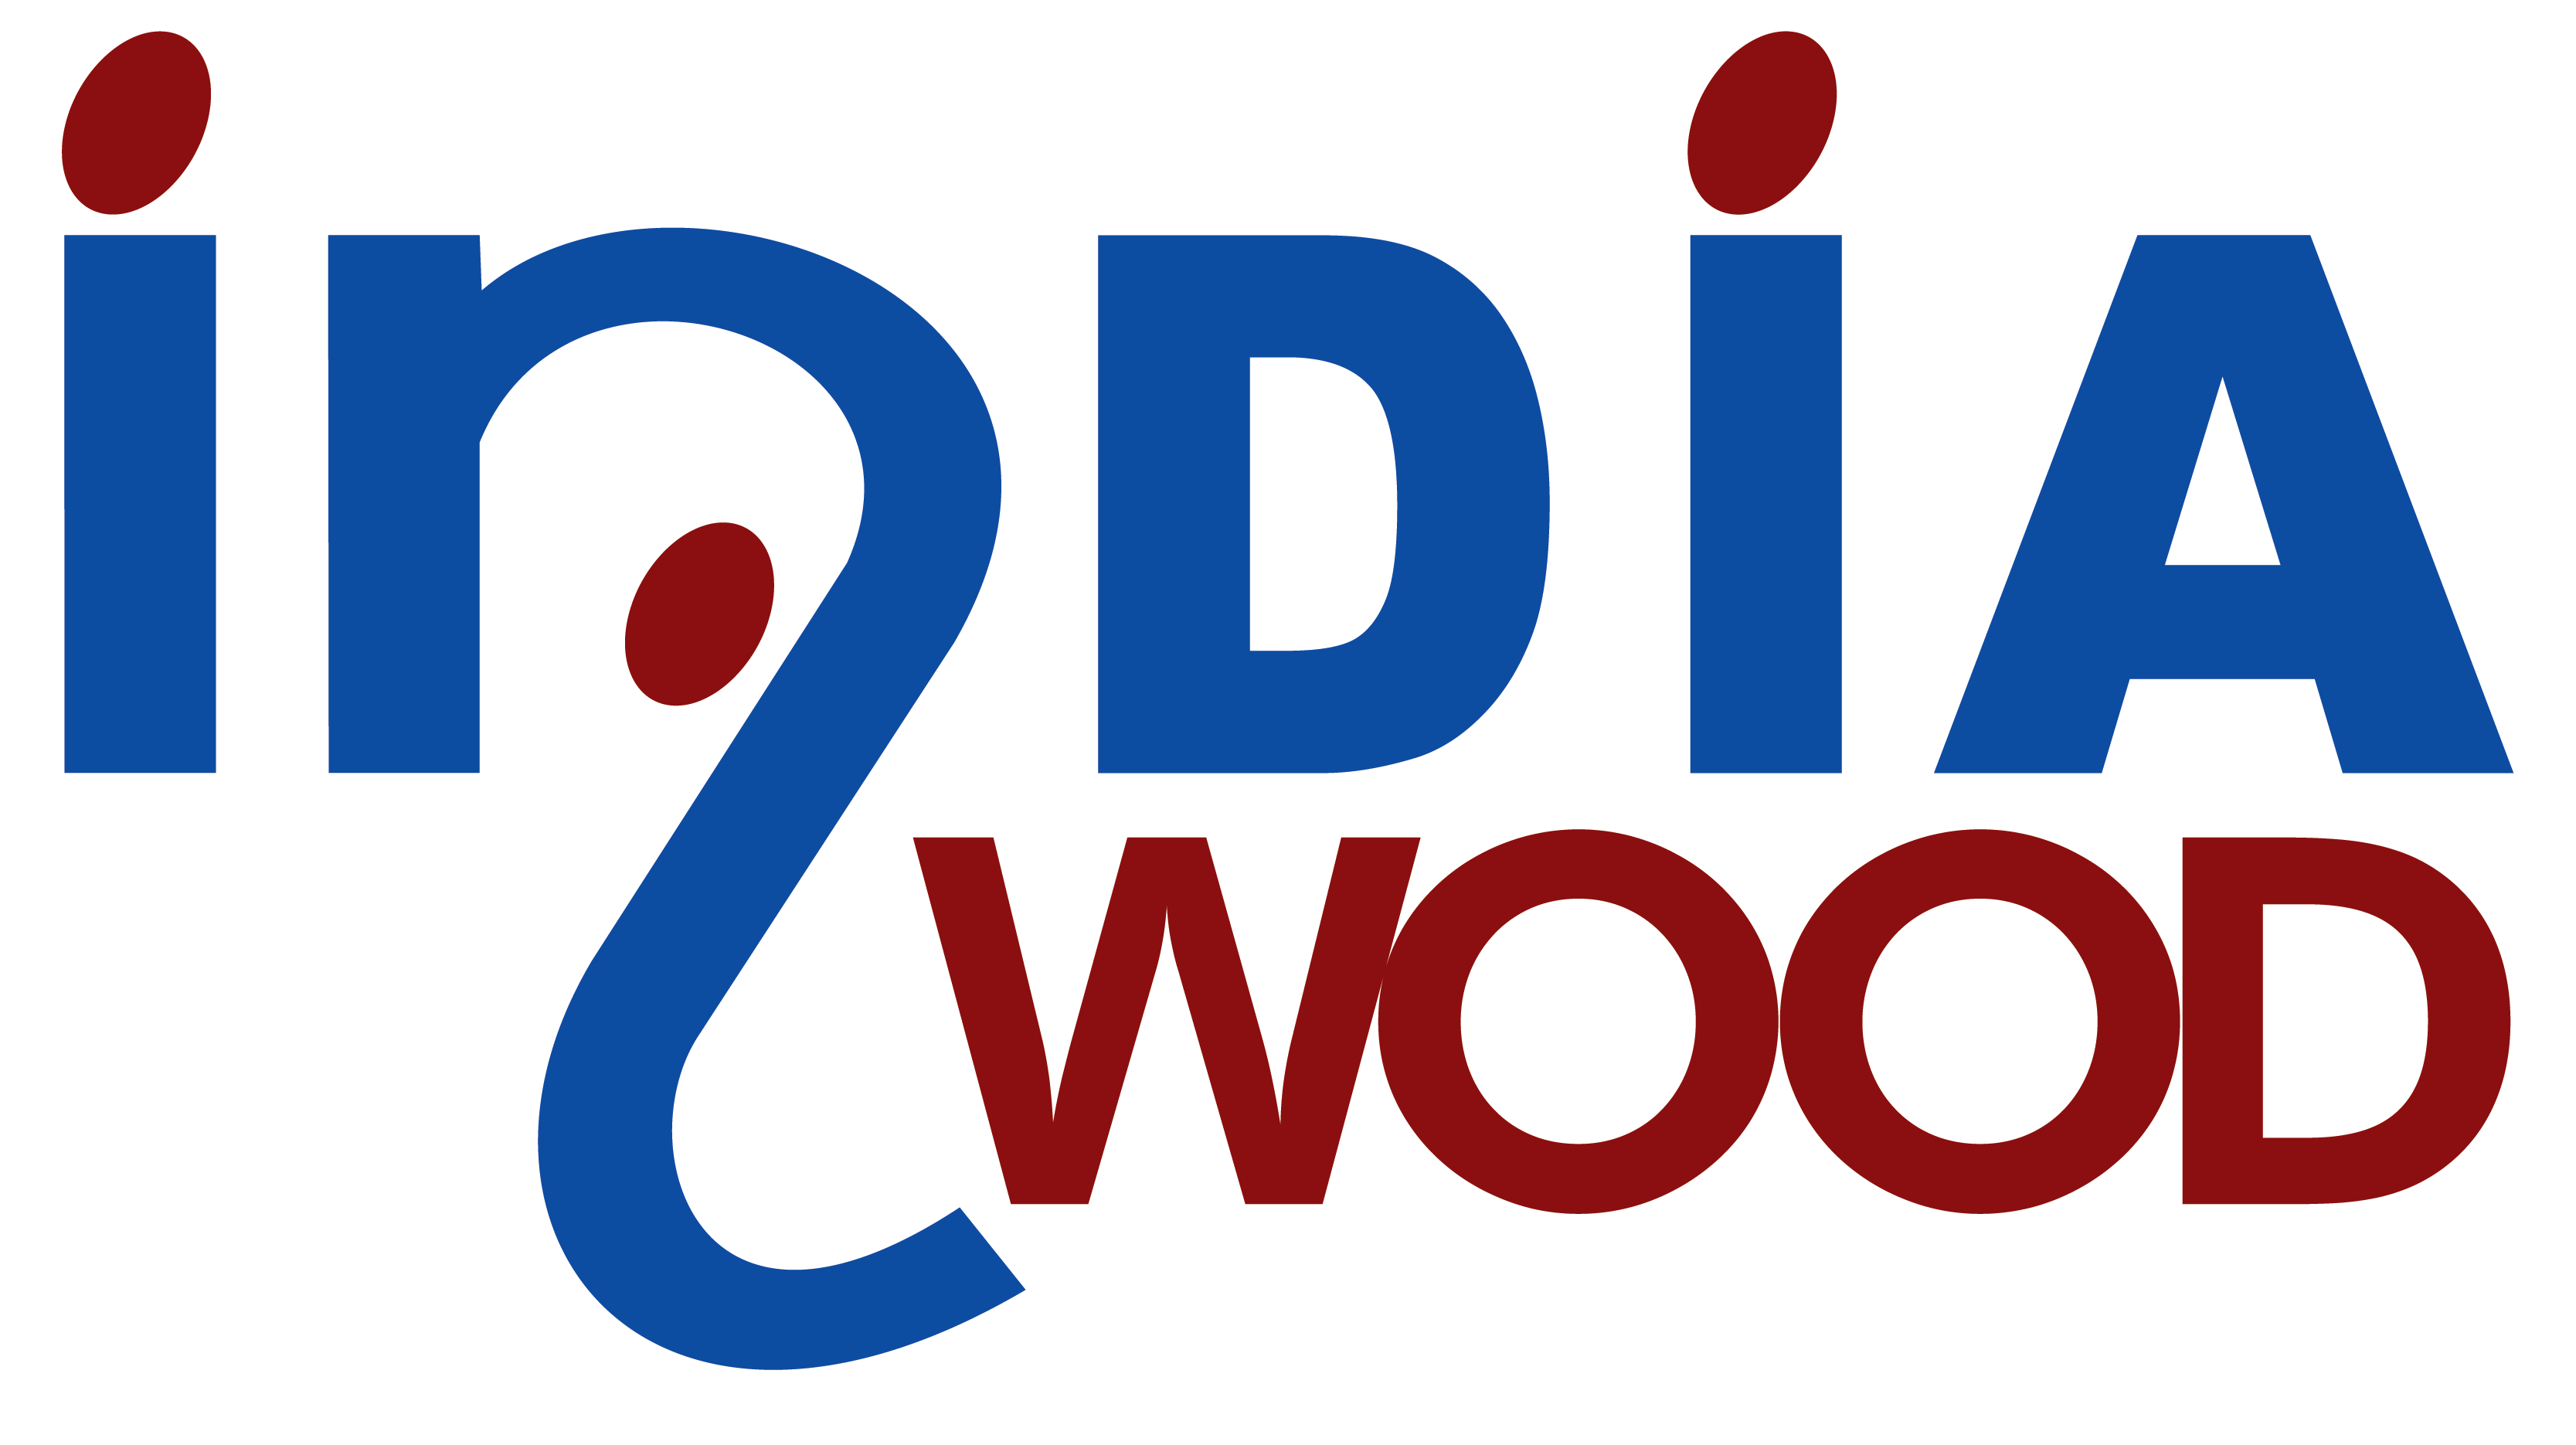 Indiawood 2020